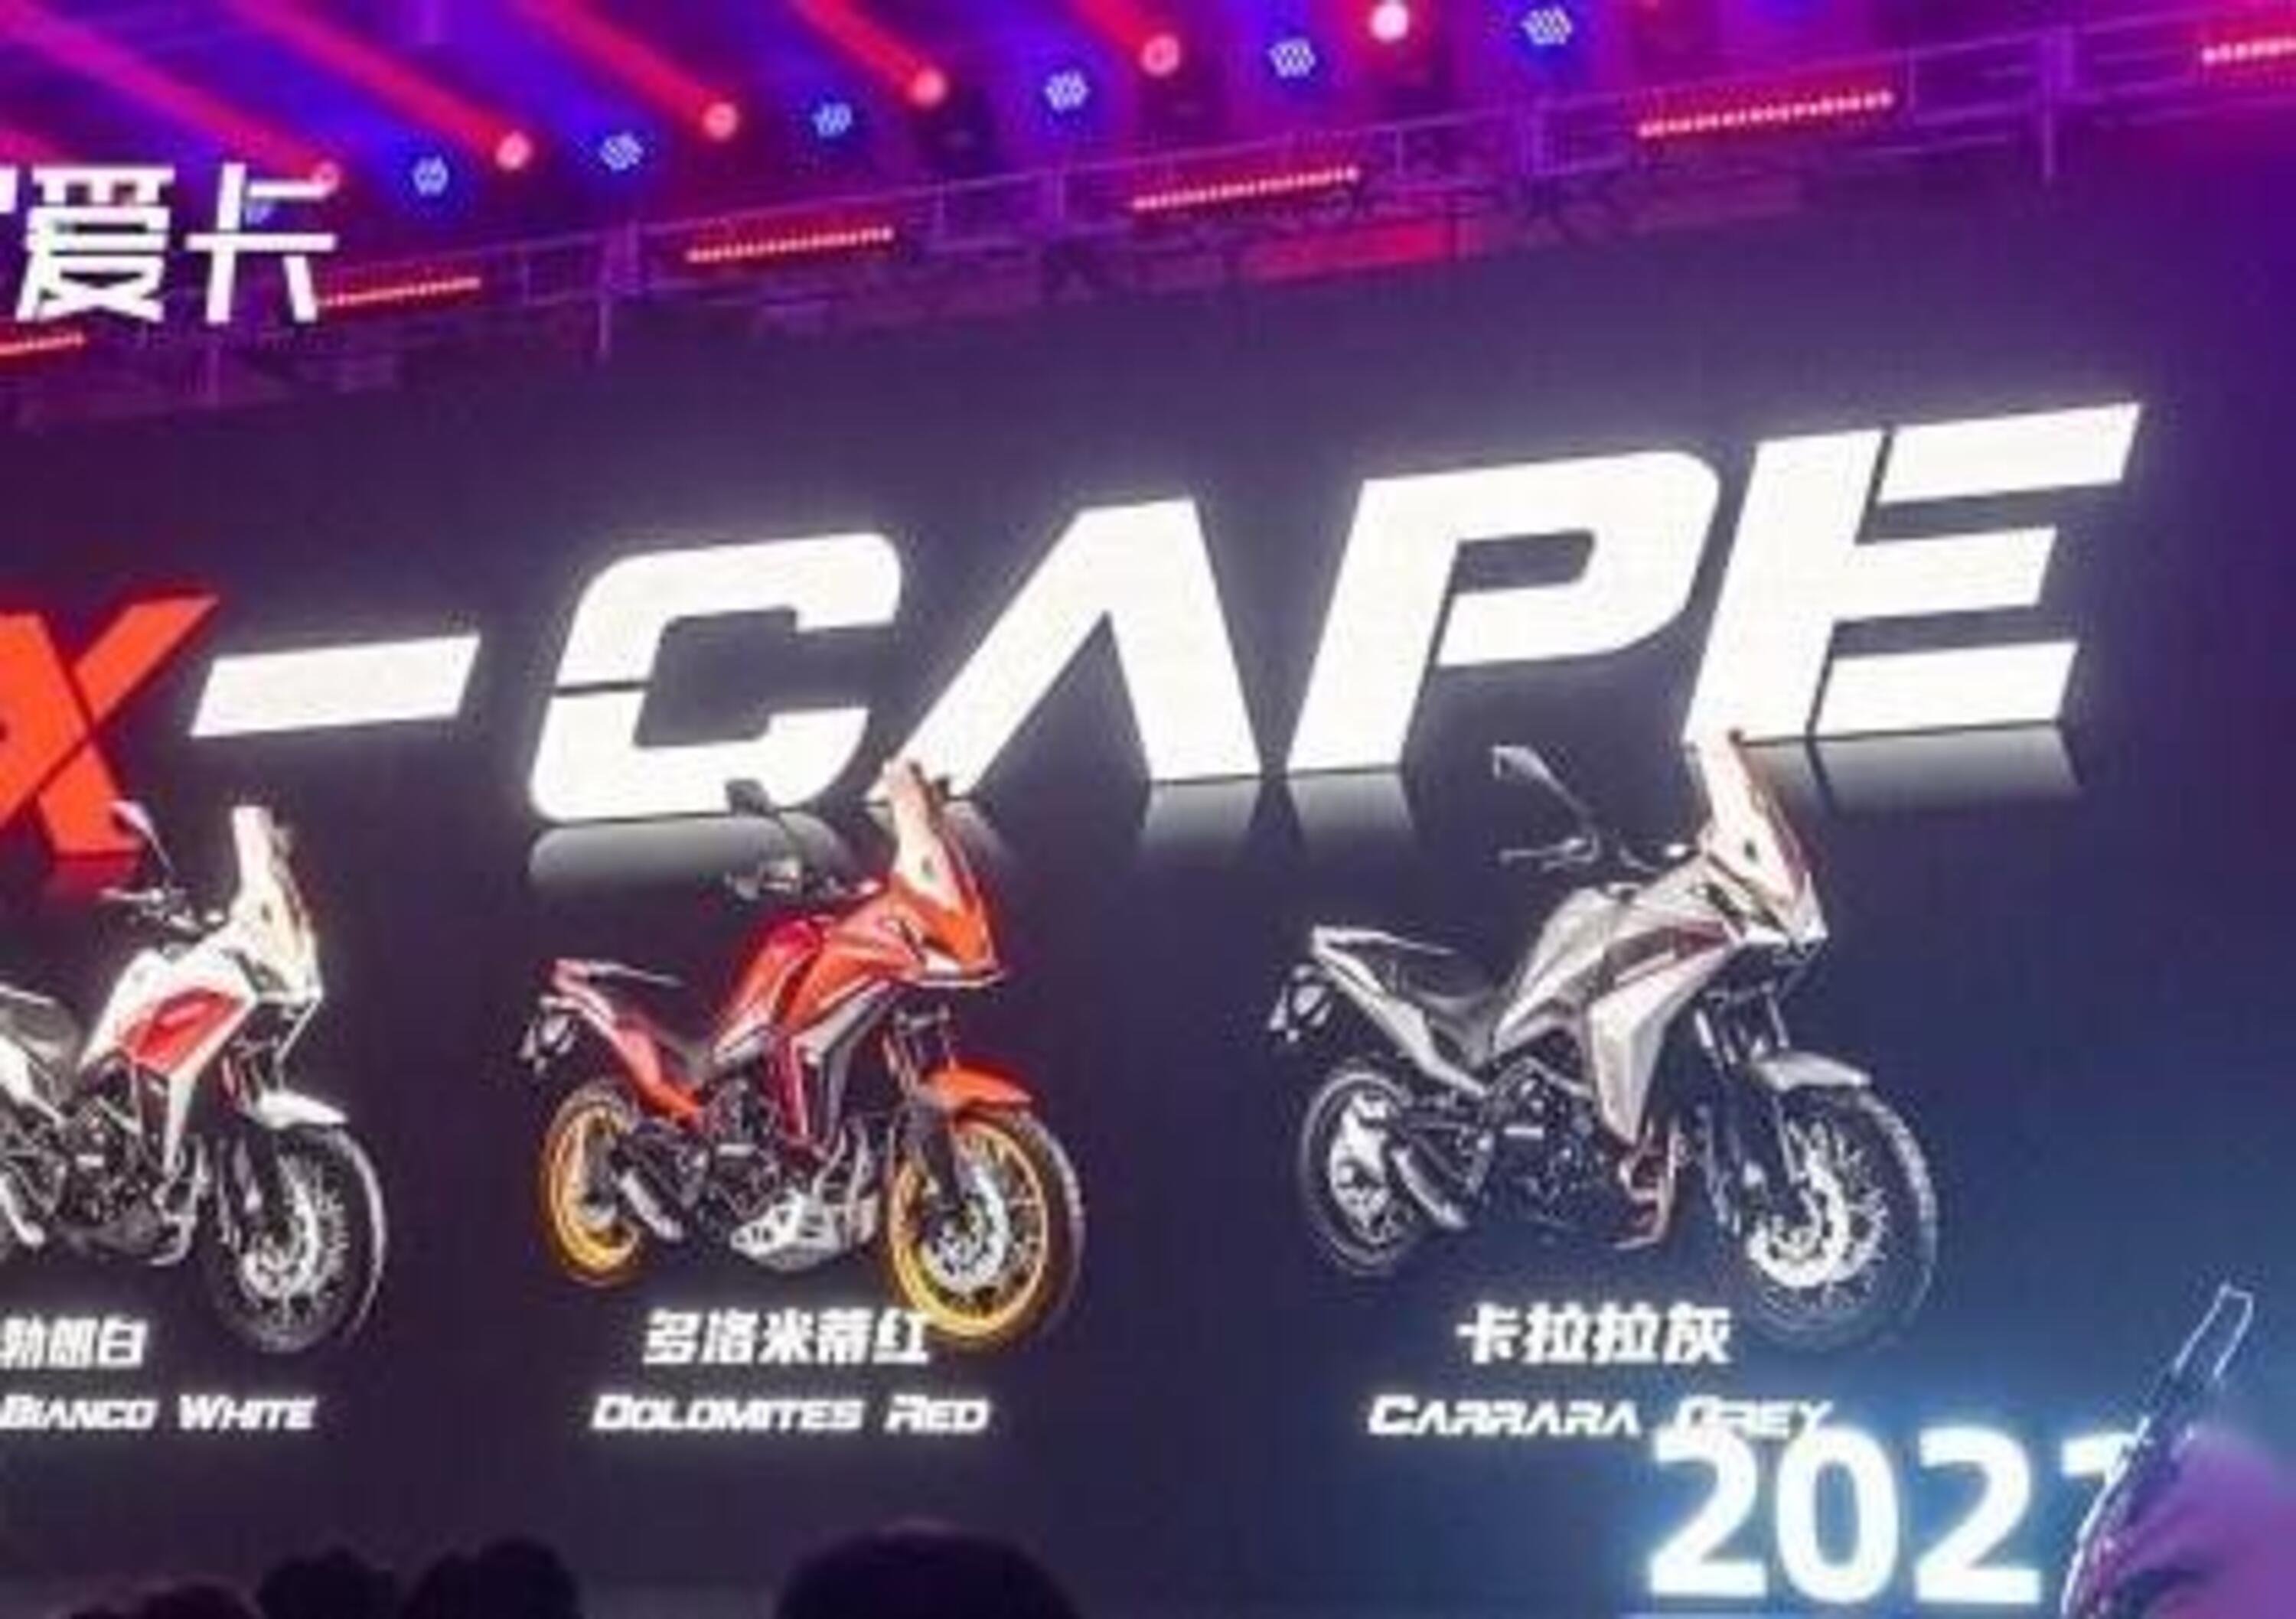 X-Cape 650 ADV: la Moto Morini ha fatto il suo debutto in Cina